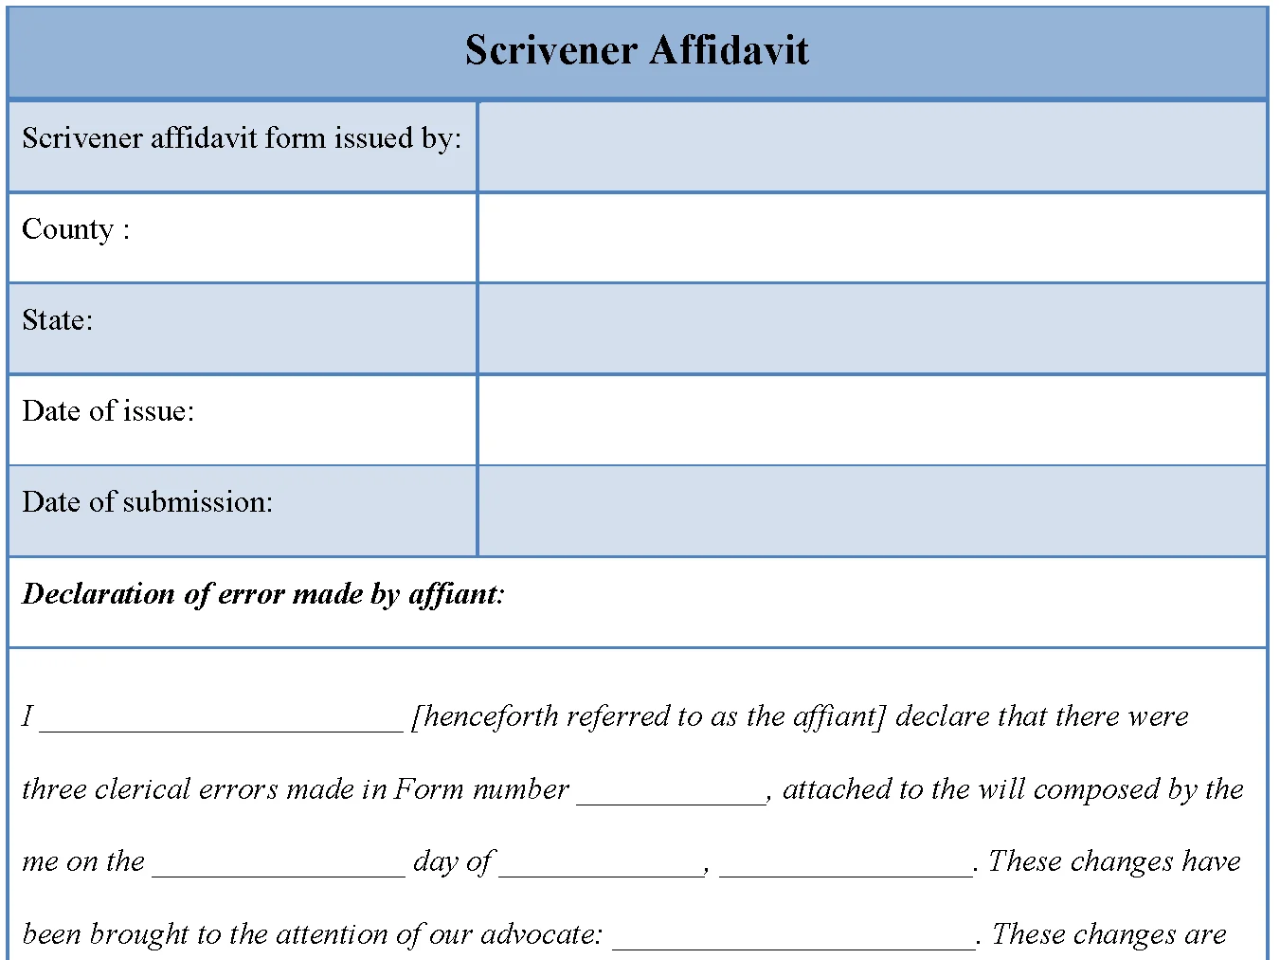 Scrivener Affidavit Form